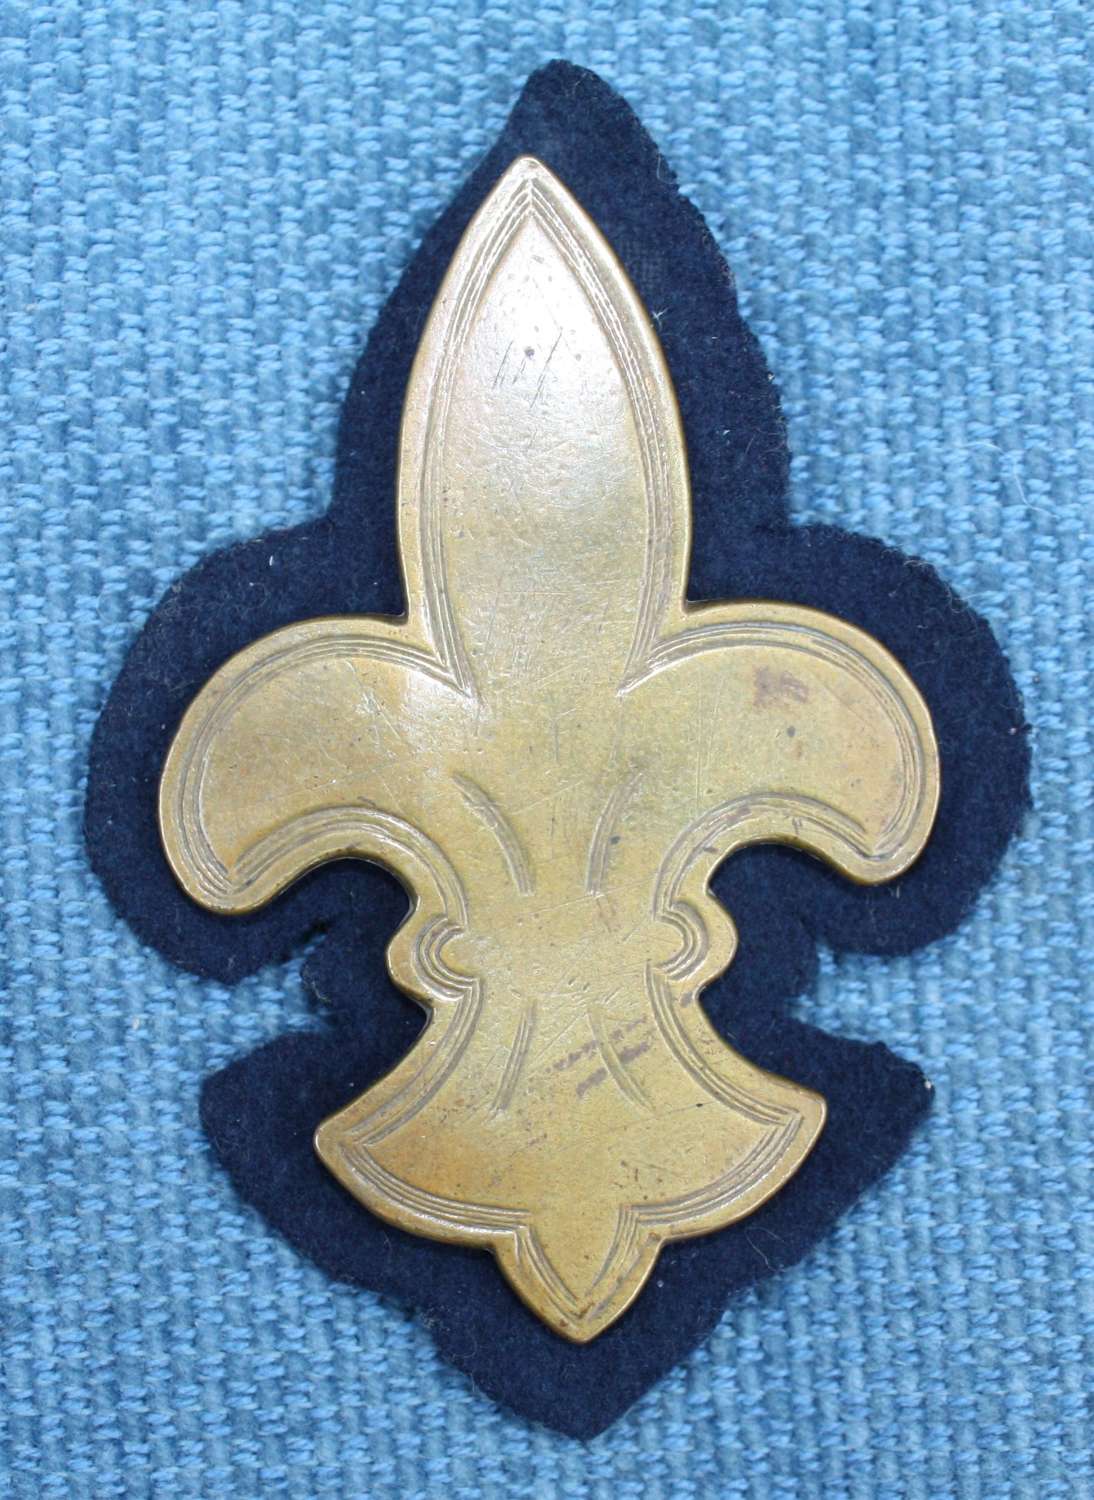 WW1 British Army Cavalry Arm Brass Trade Badge on Blue Felt.